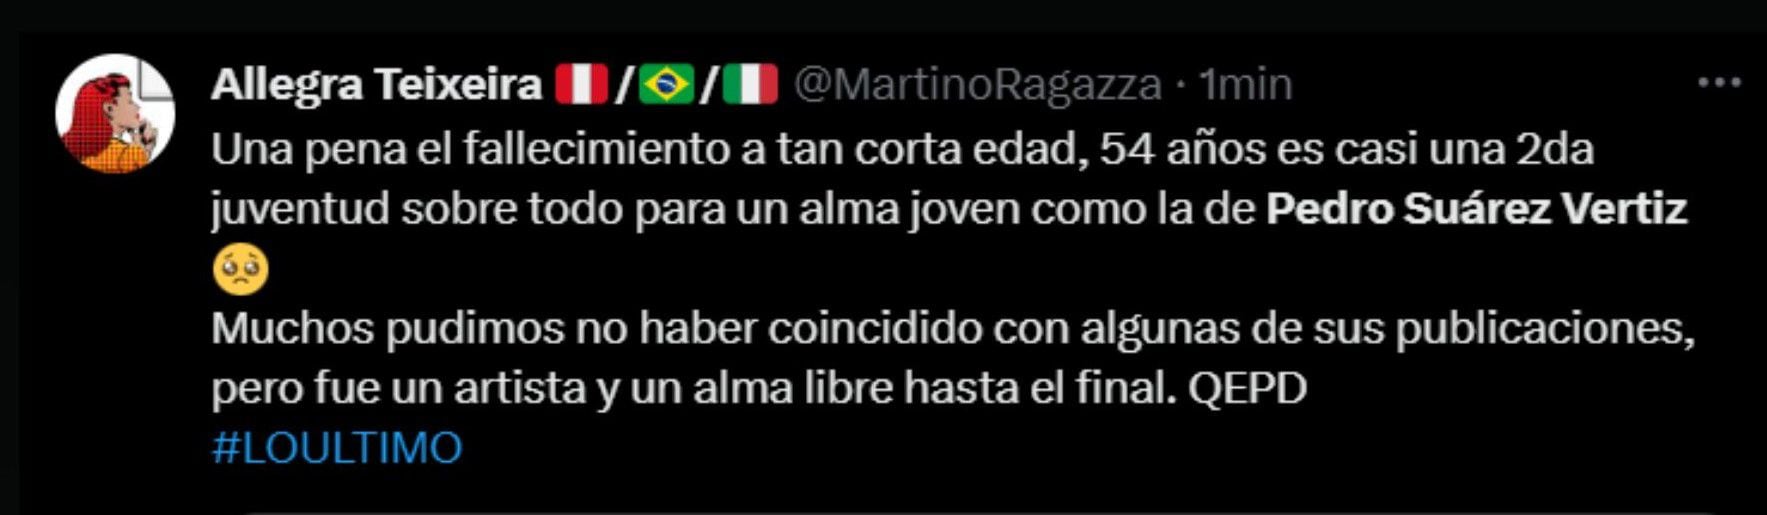 Reacción de las redes ante muerte de Pedro Suárez Vértiz.